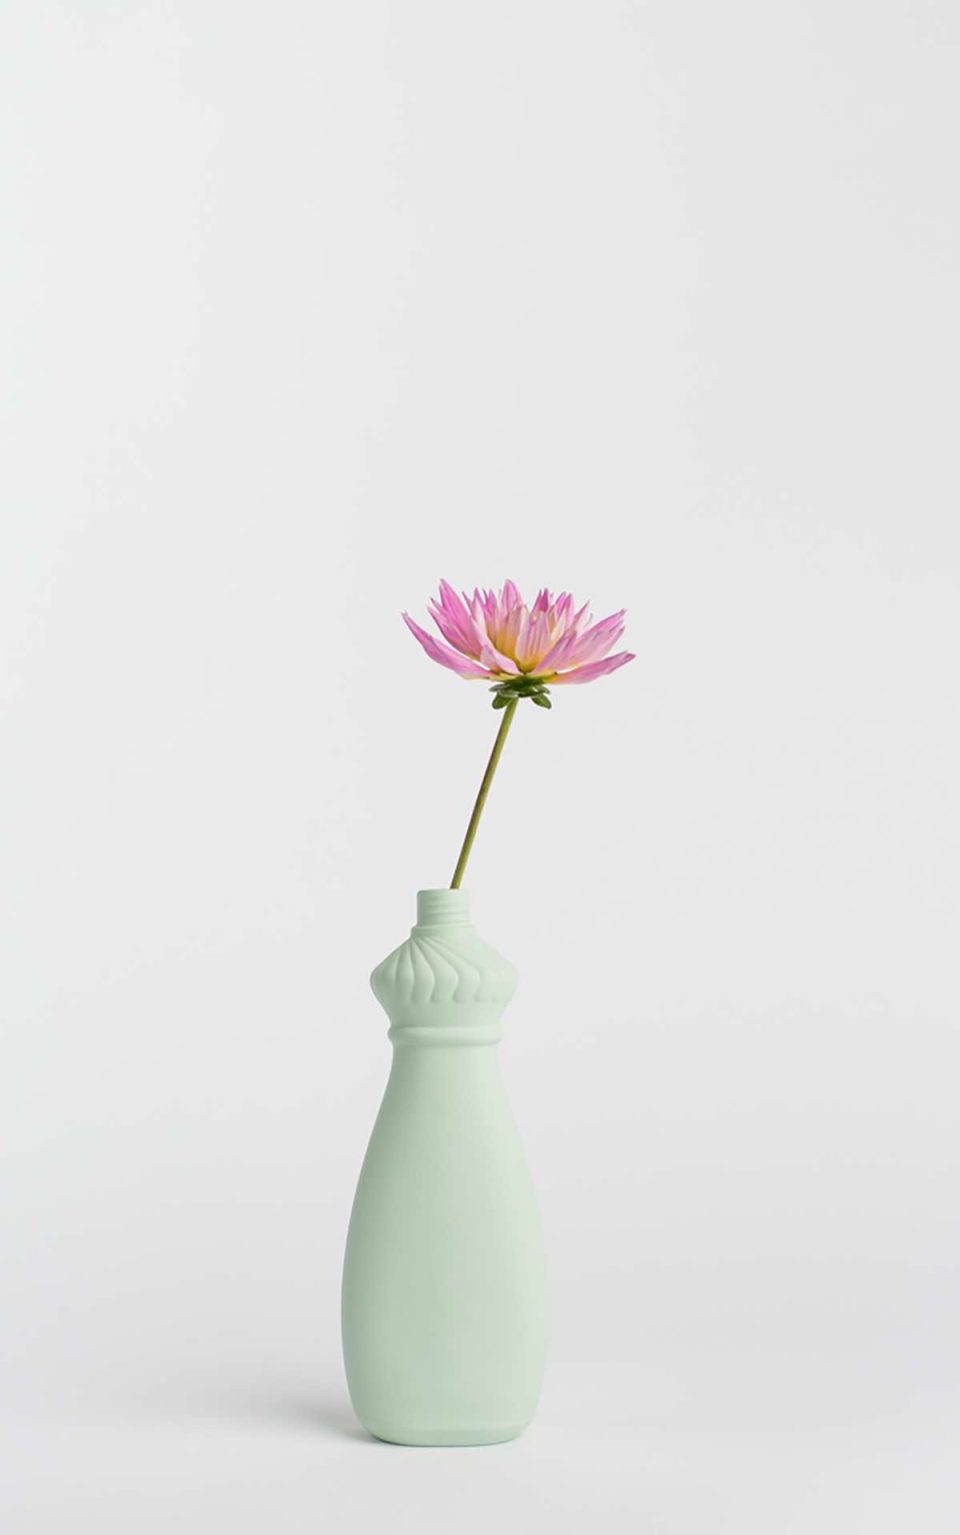 Prikazana je vaza brenda foekje fleur u svijetlo zelenoj boji ispred sive pozadine. Vaza ima oblik kontejnera za sredstvo za pranje suđa. U vazu je utaknut ružićasti cvjet.